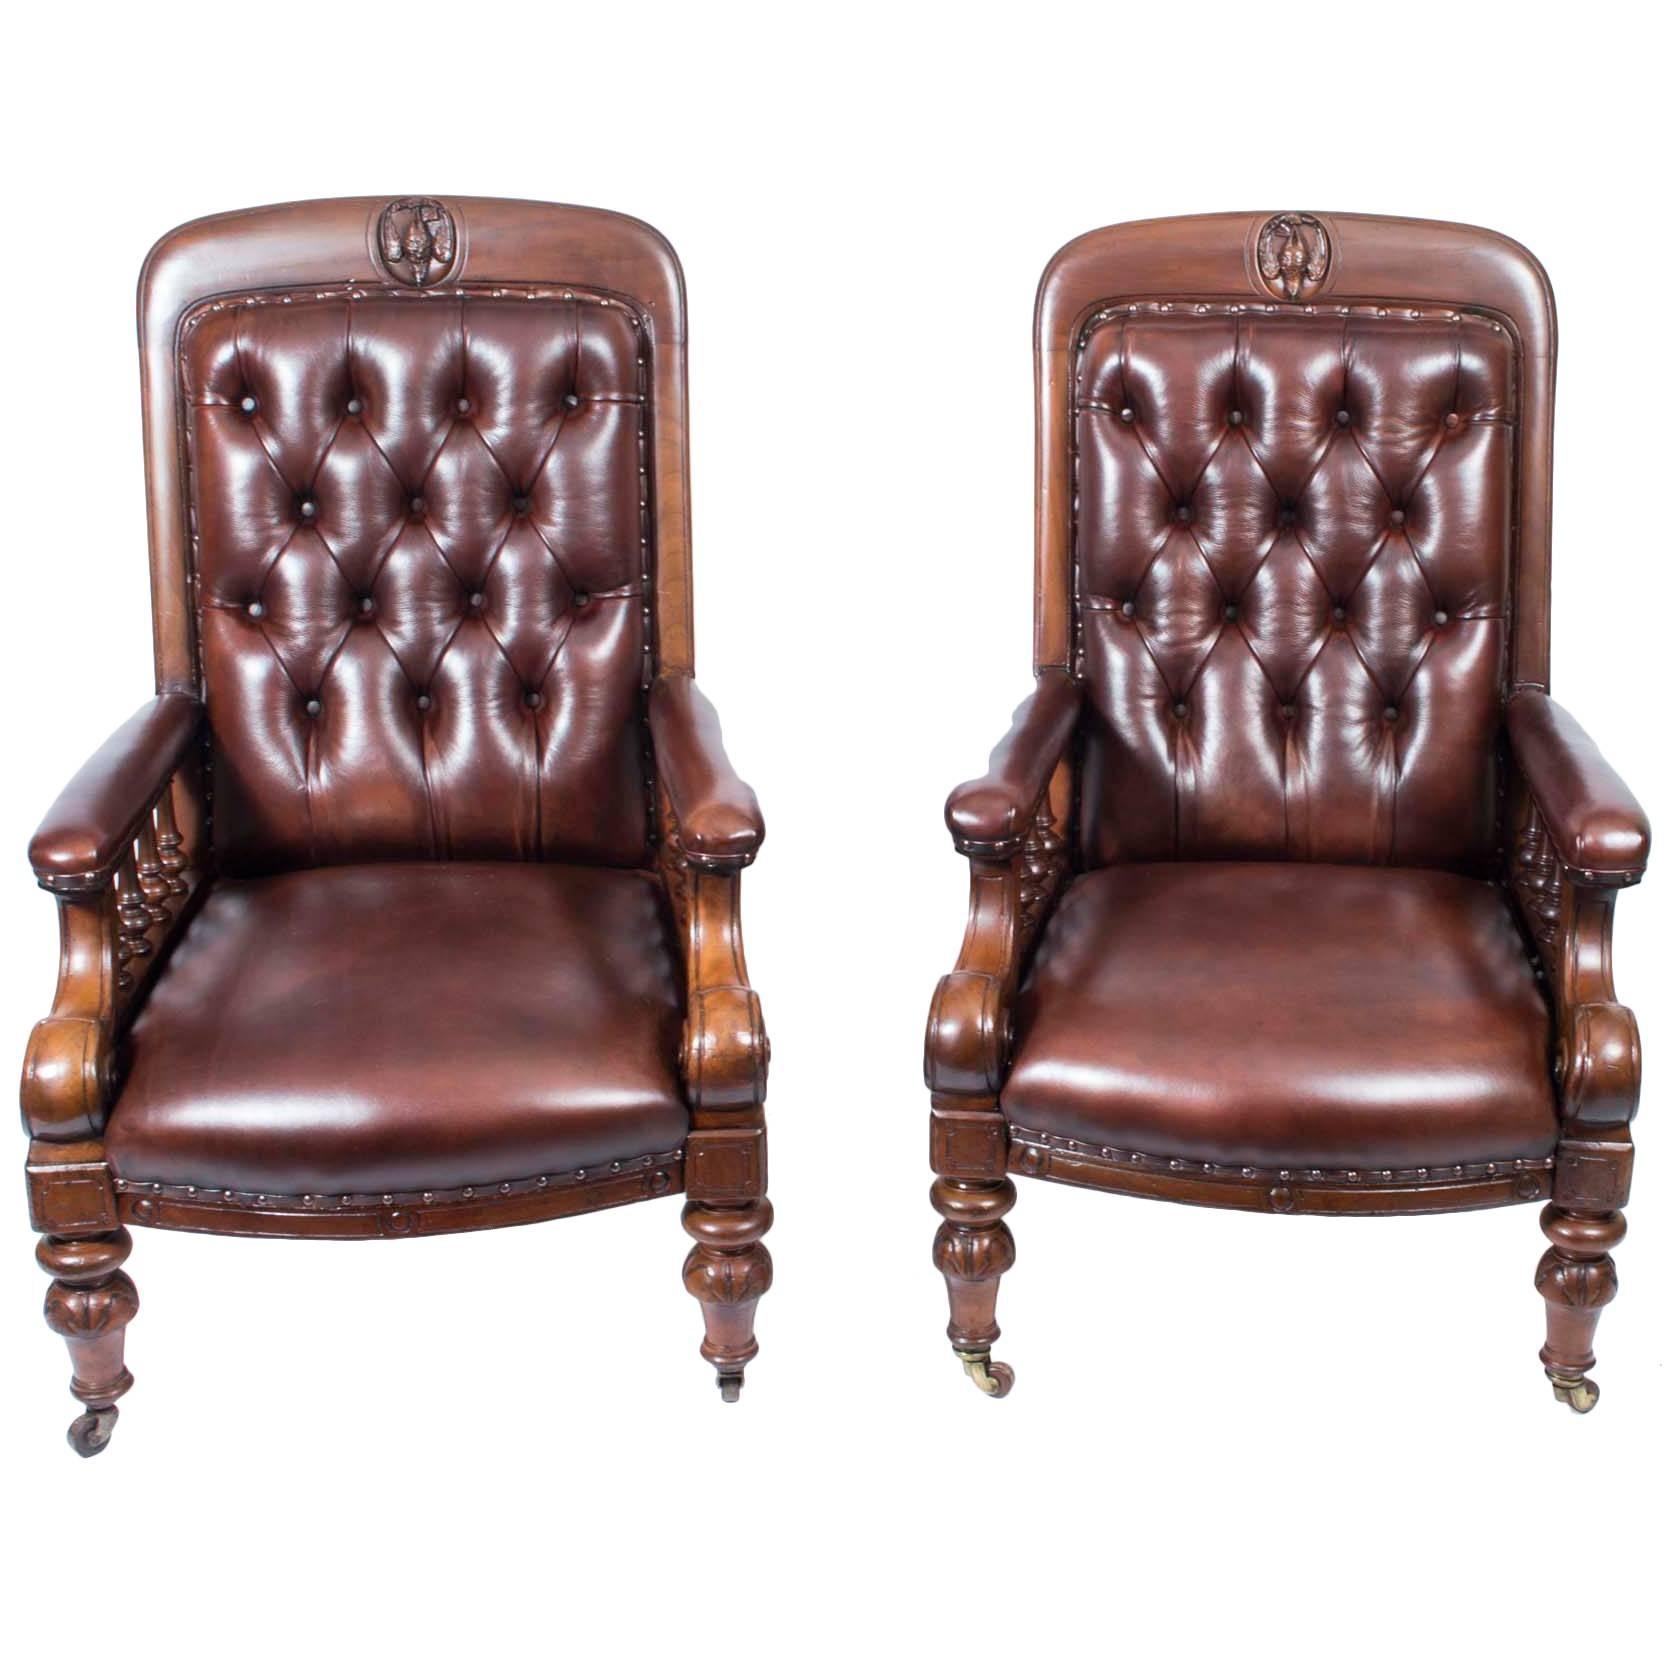 Paire de fauteuils en cuir de style victorien anglais du XIXe siècle